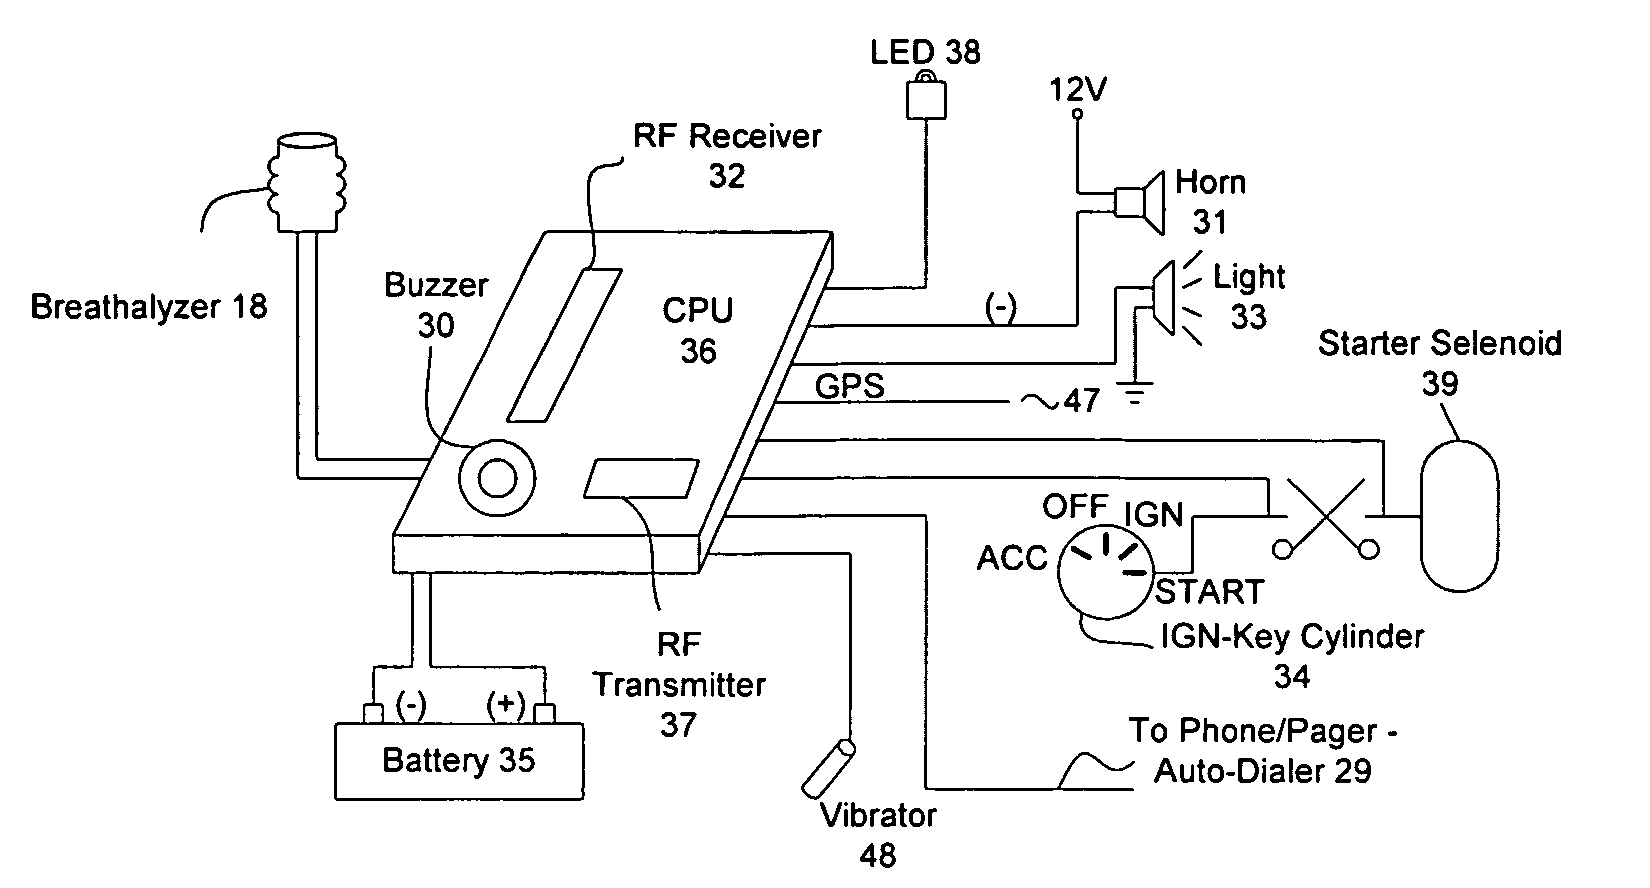 Portable RF breathalyzer